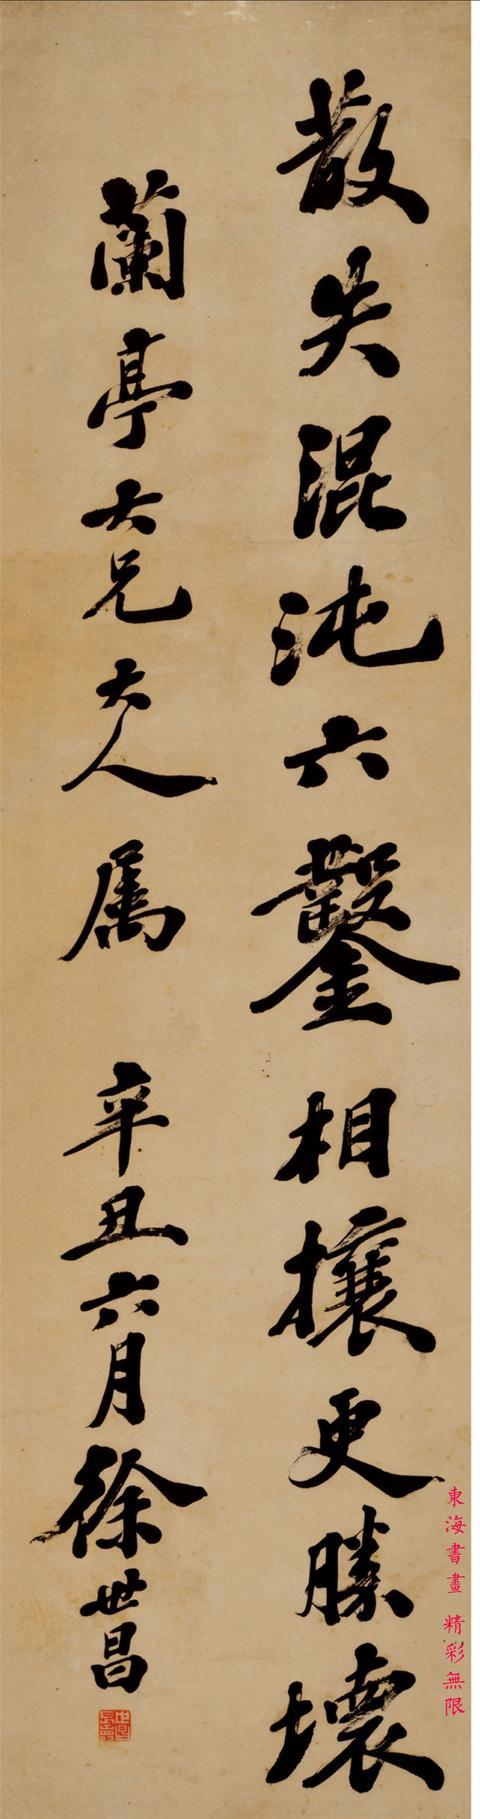 民国总统徐世昌 1901年行书 东坡诗四屏镜片